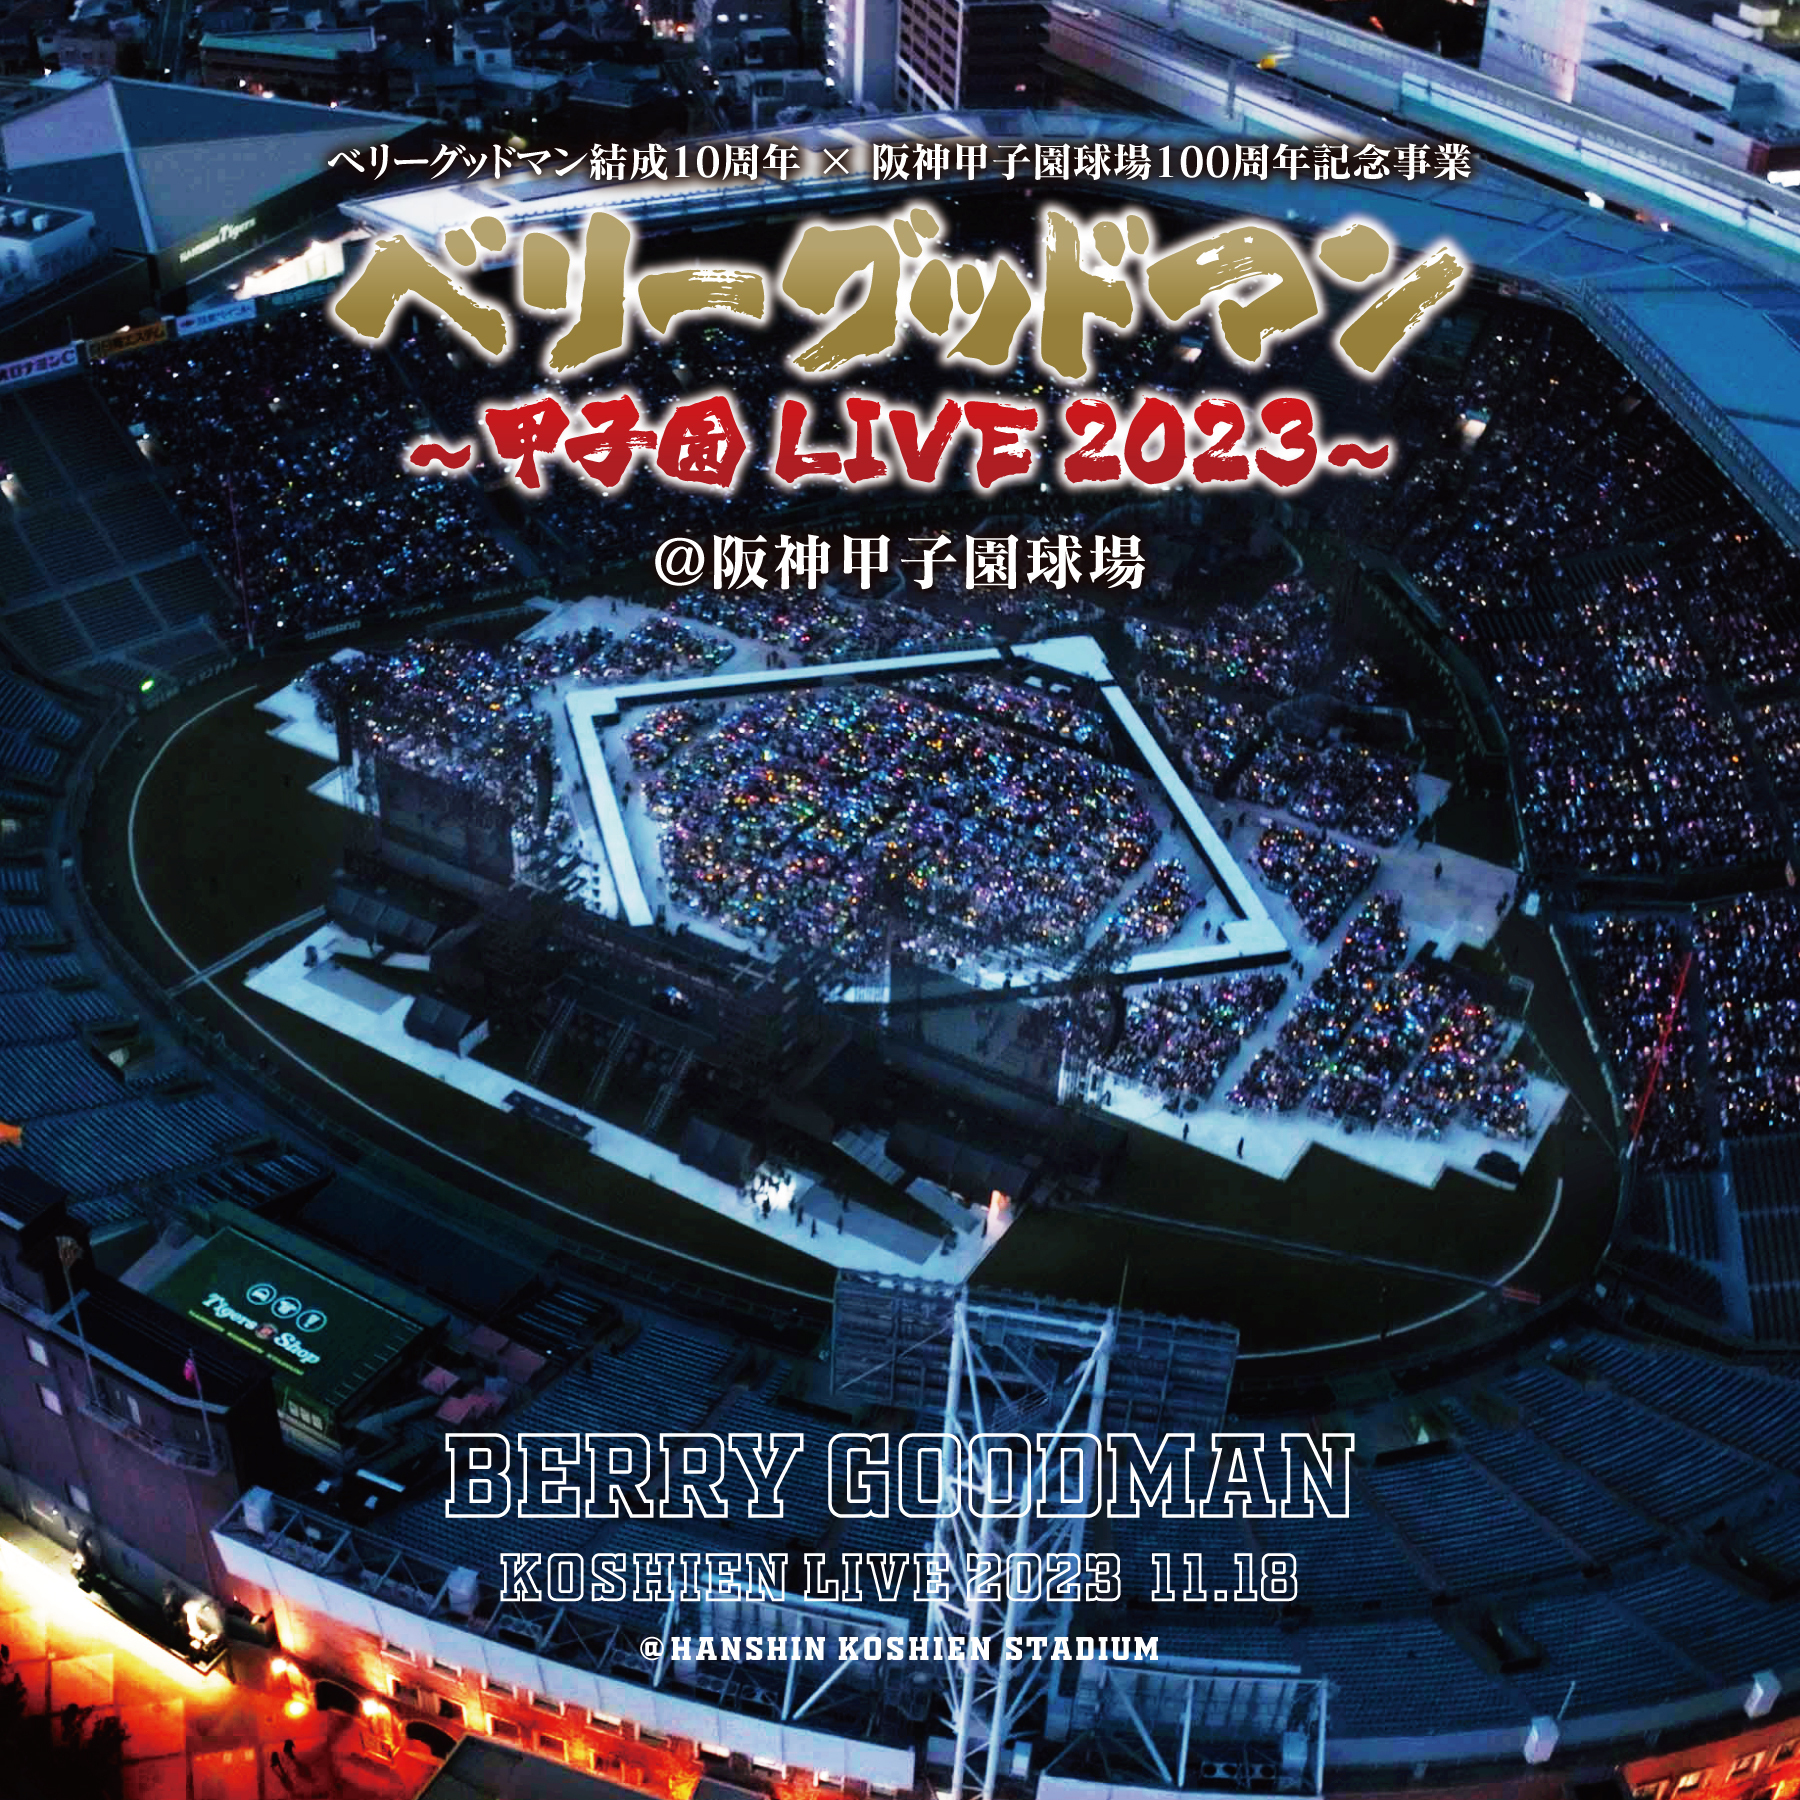 伝説の1日 〜甲子園 LIVE 2023〜 | BERRY GOODMAN OFFICIAL WEBSITE